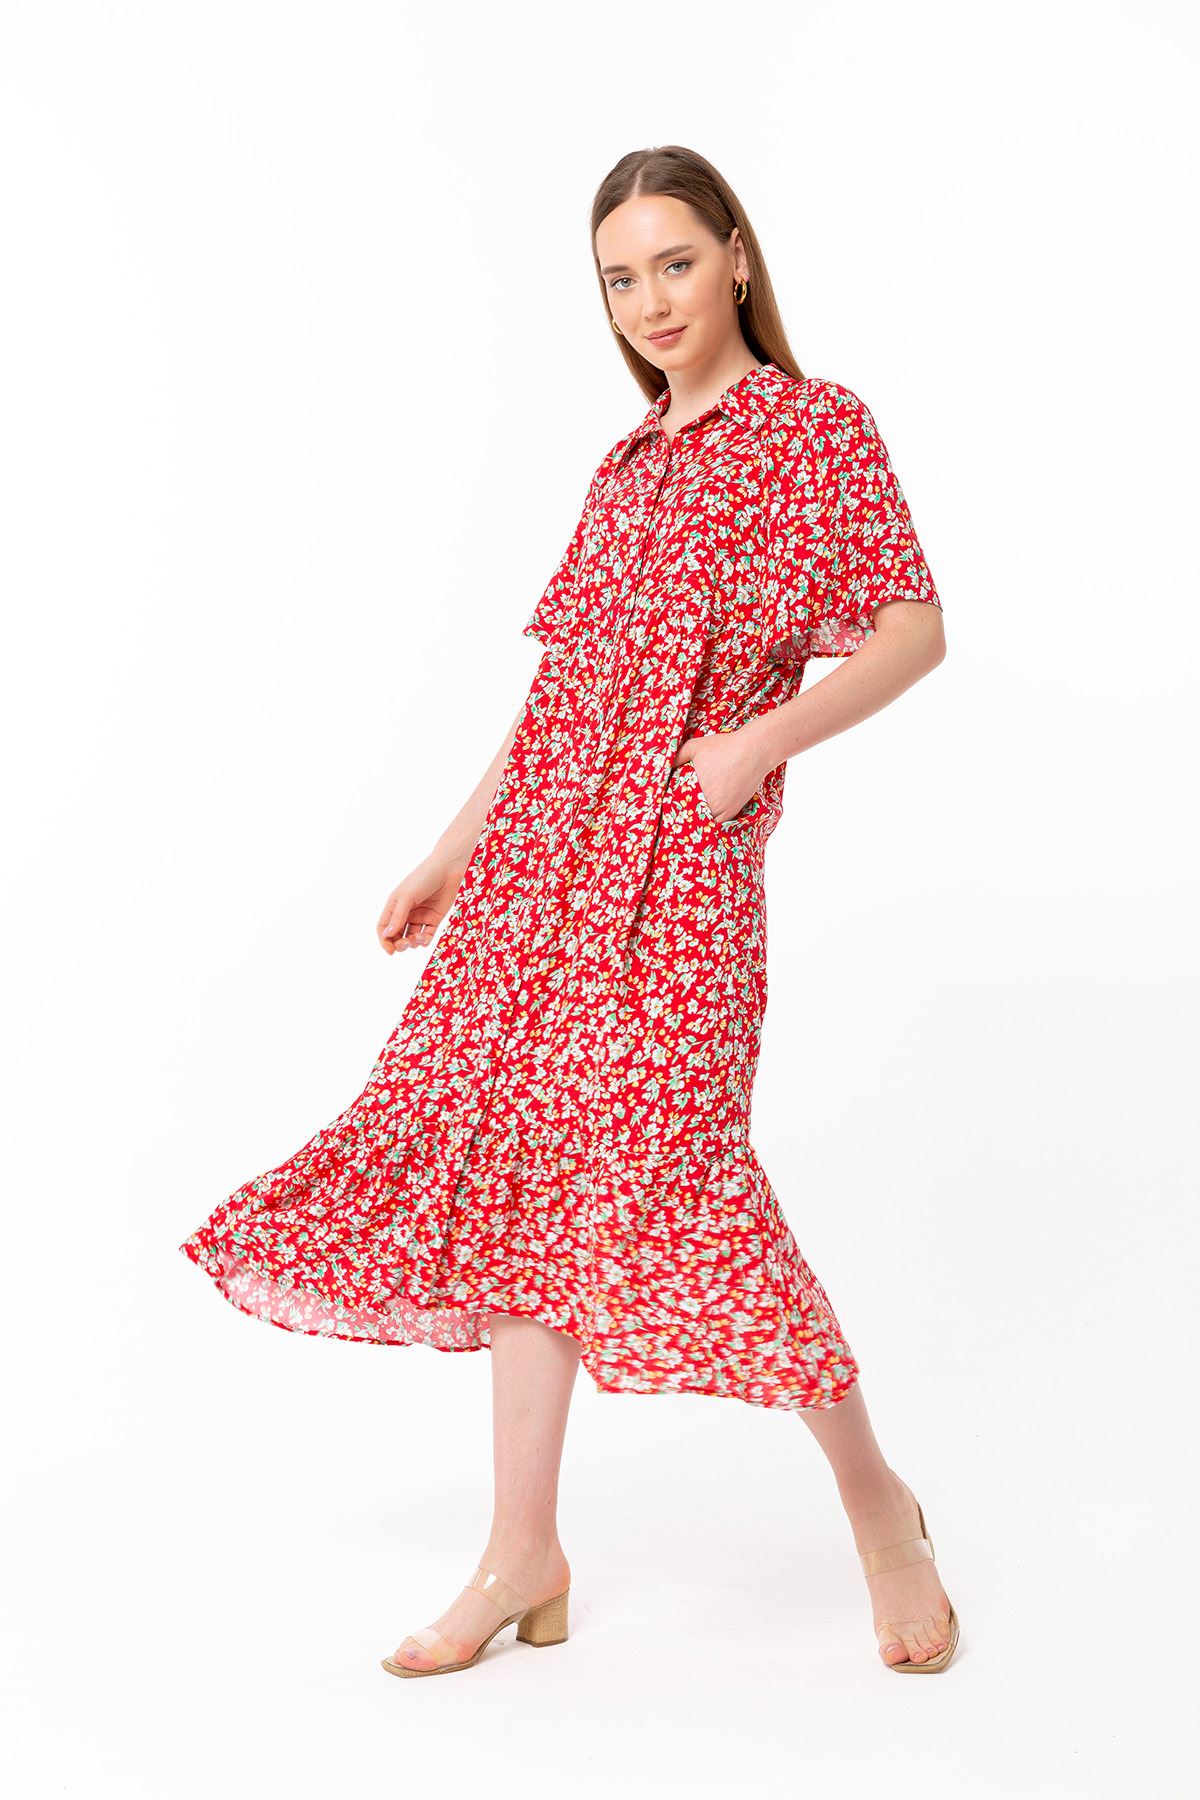 Empirme Kumaş Oversize Çiçek Desen Düğmeli Kadın Elbise-Kırmızı